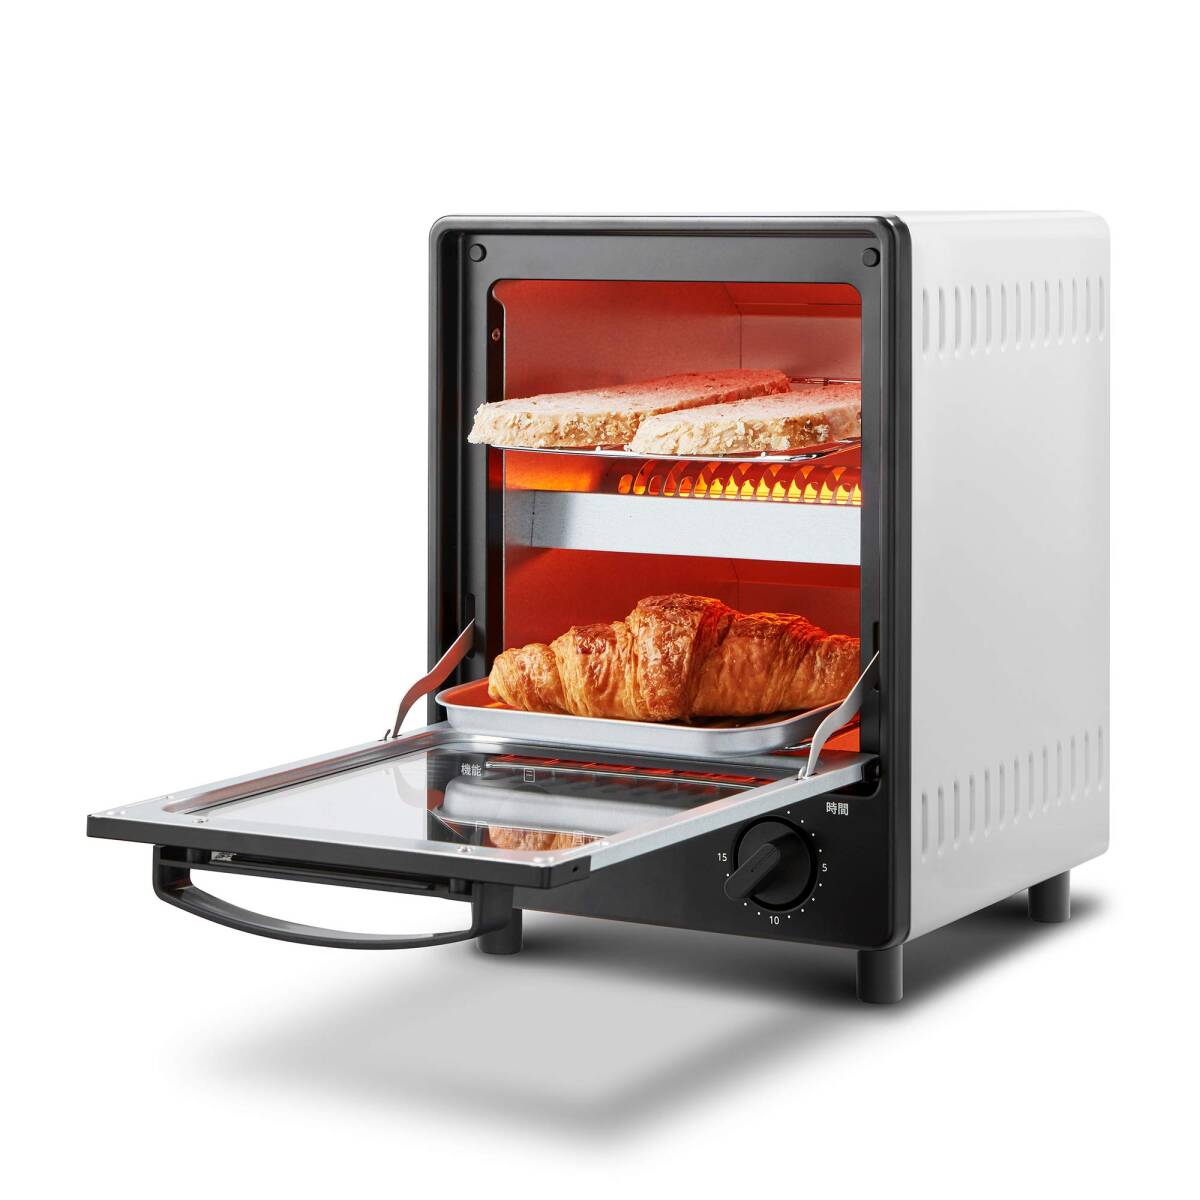 COMFEE' オーブントースター 庫内上下2段構造 2つの同時調理にできる 3段階温度調節 15分タイマー 焼きムラ抑え スライドオープンドア_画像1